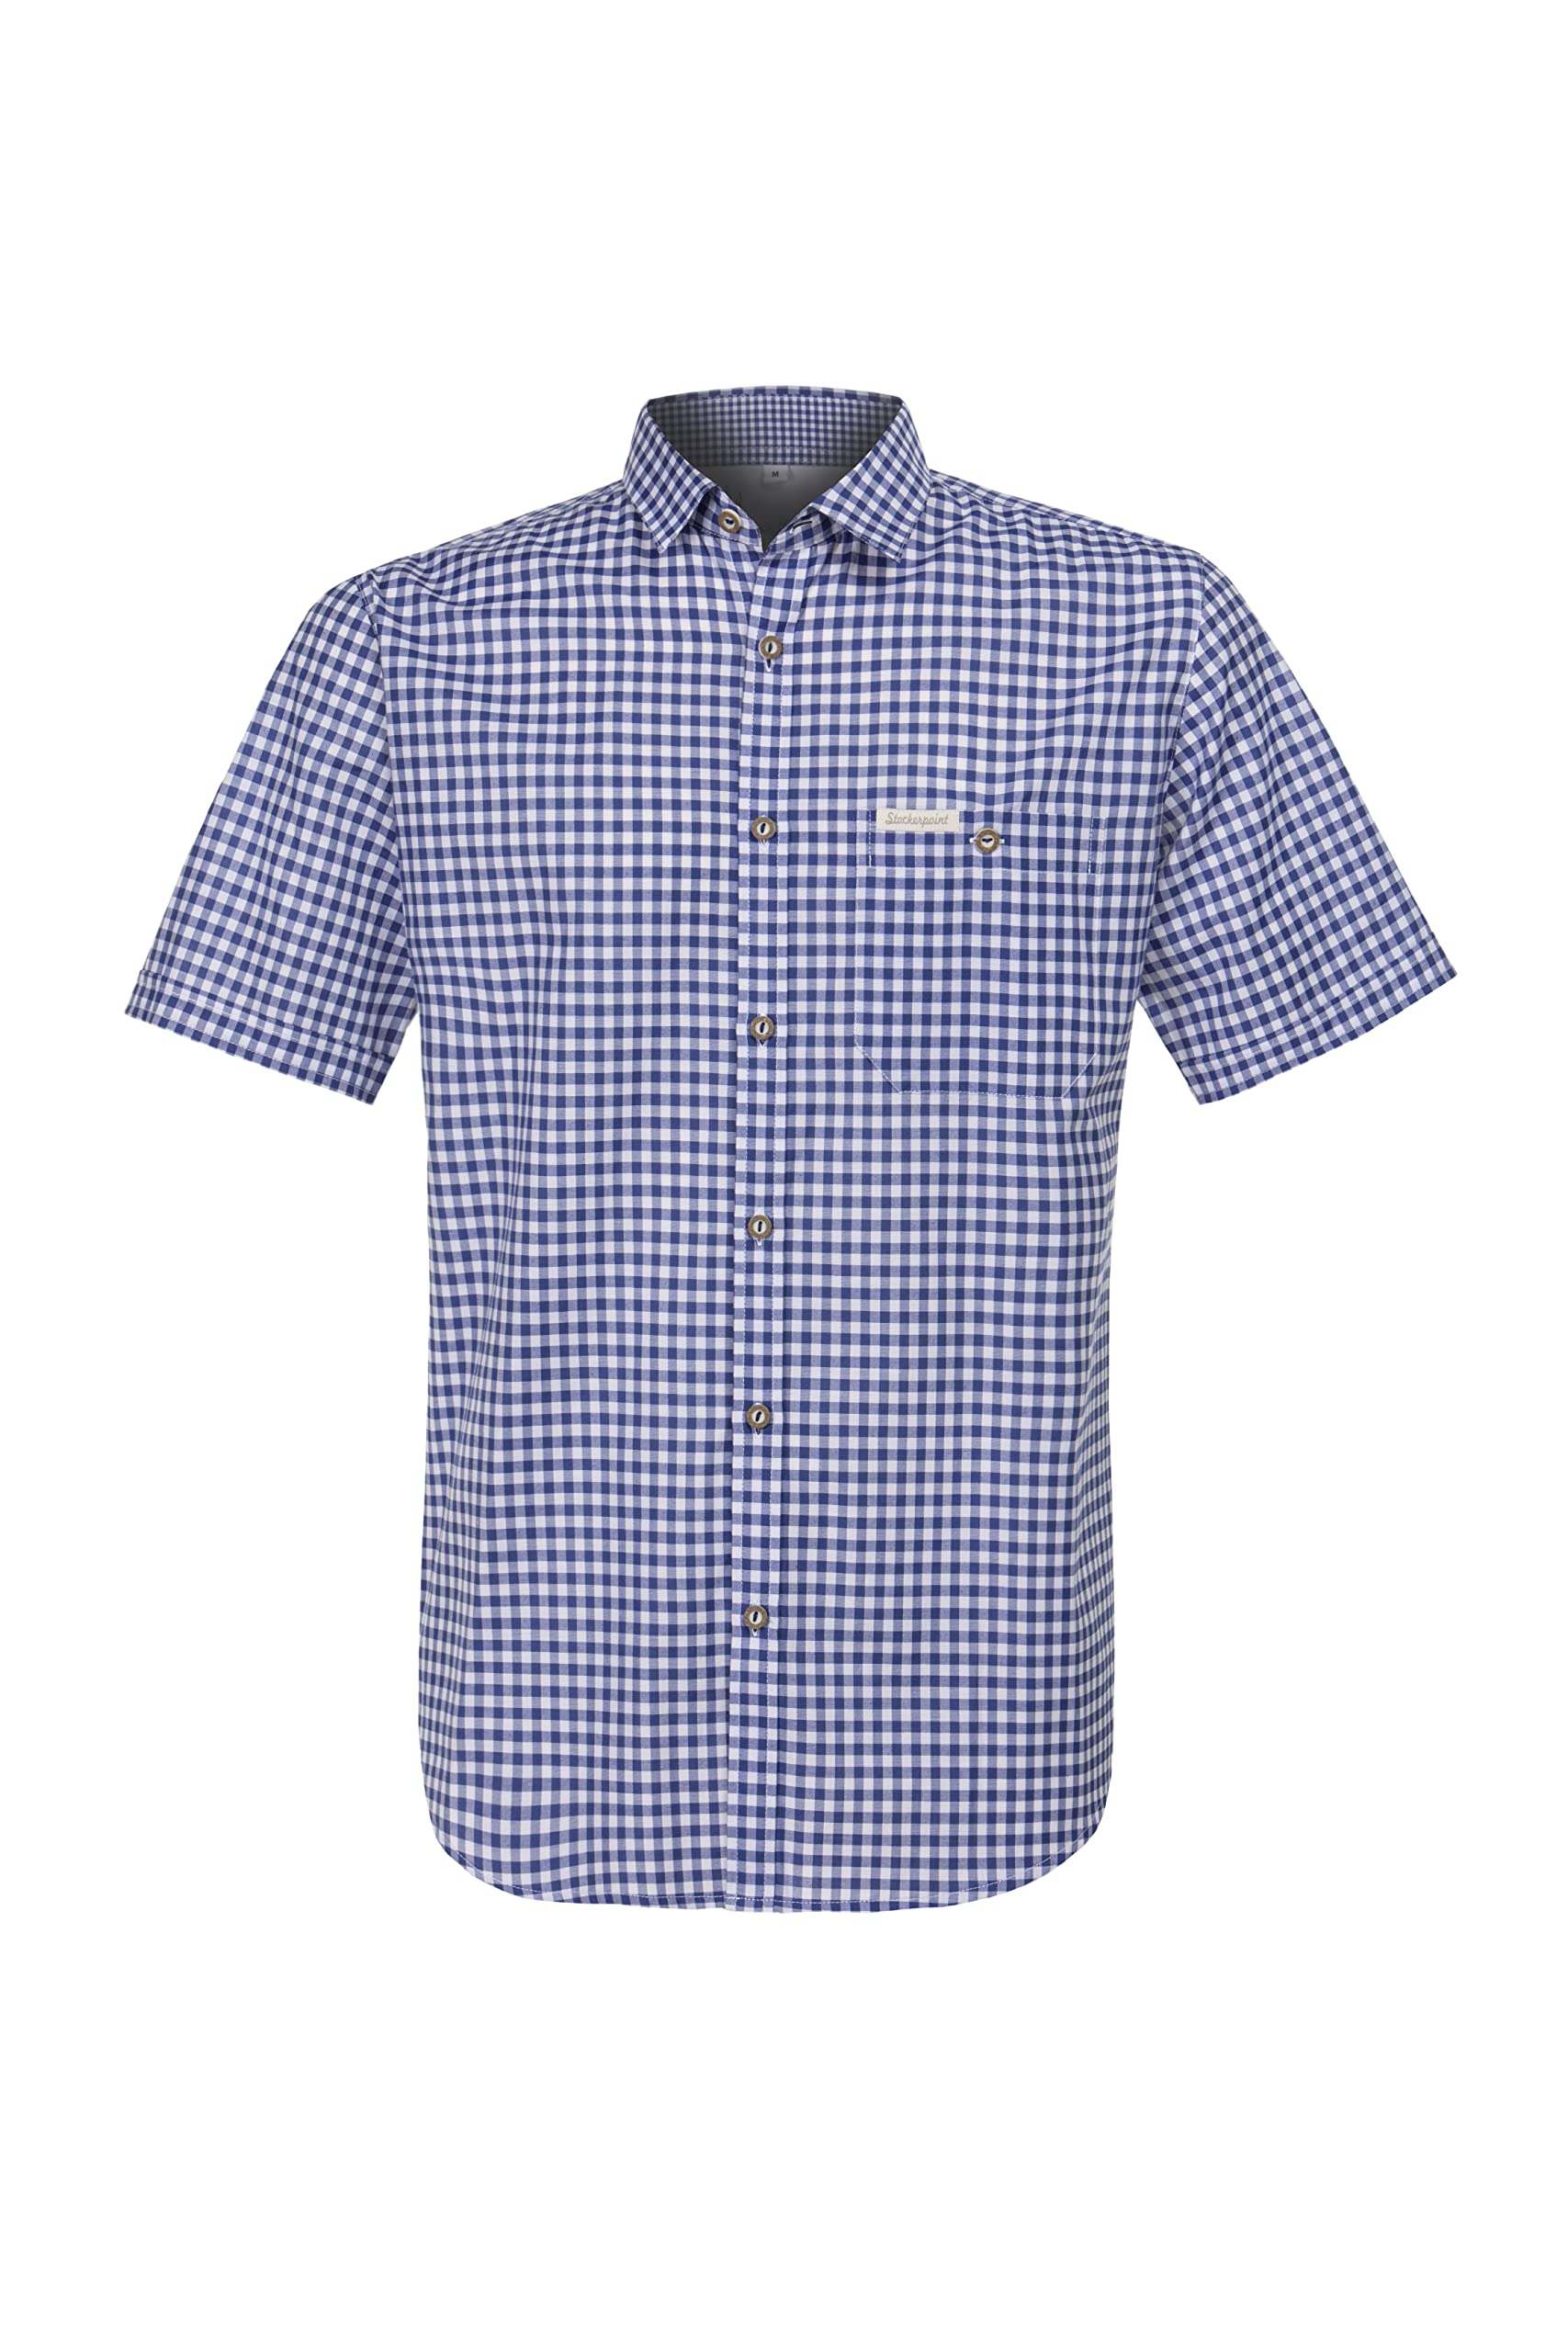 Stockerpoint Herren overhemd renko3 Trachtenhemd, Blau (Blau Blau), L EU